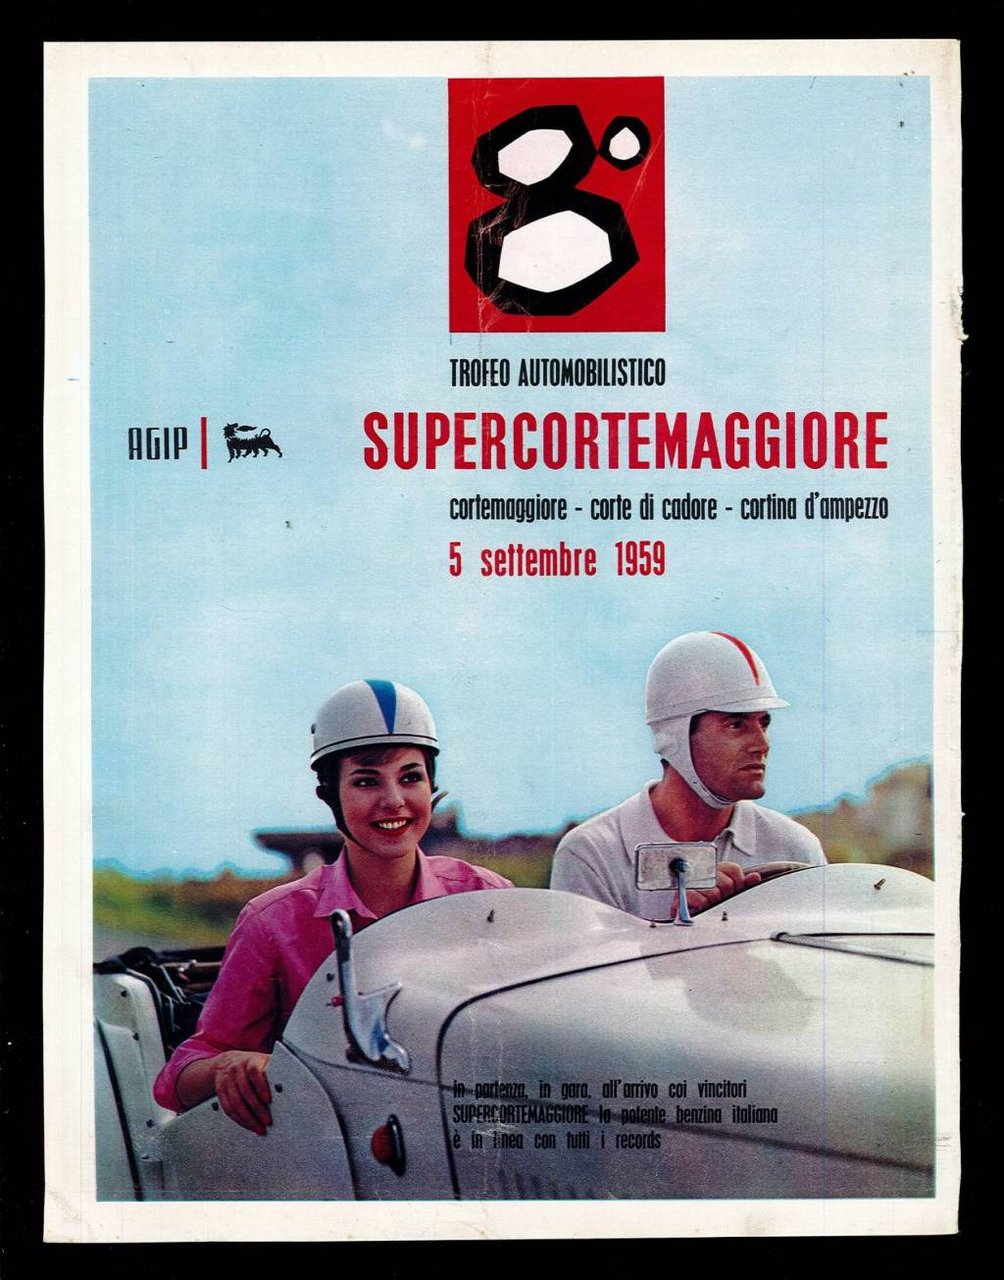 Trofeo automobilistico Supercortemaggiore 5 settembre 1959